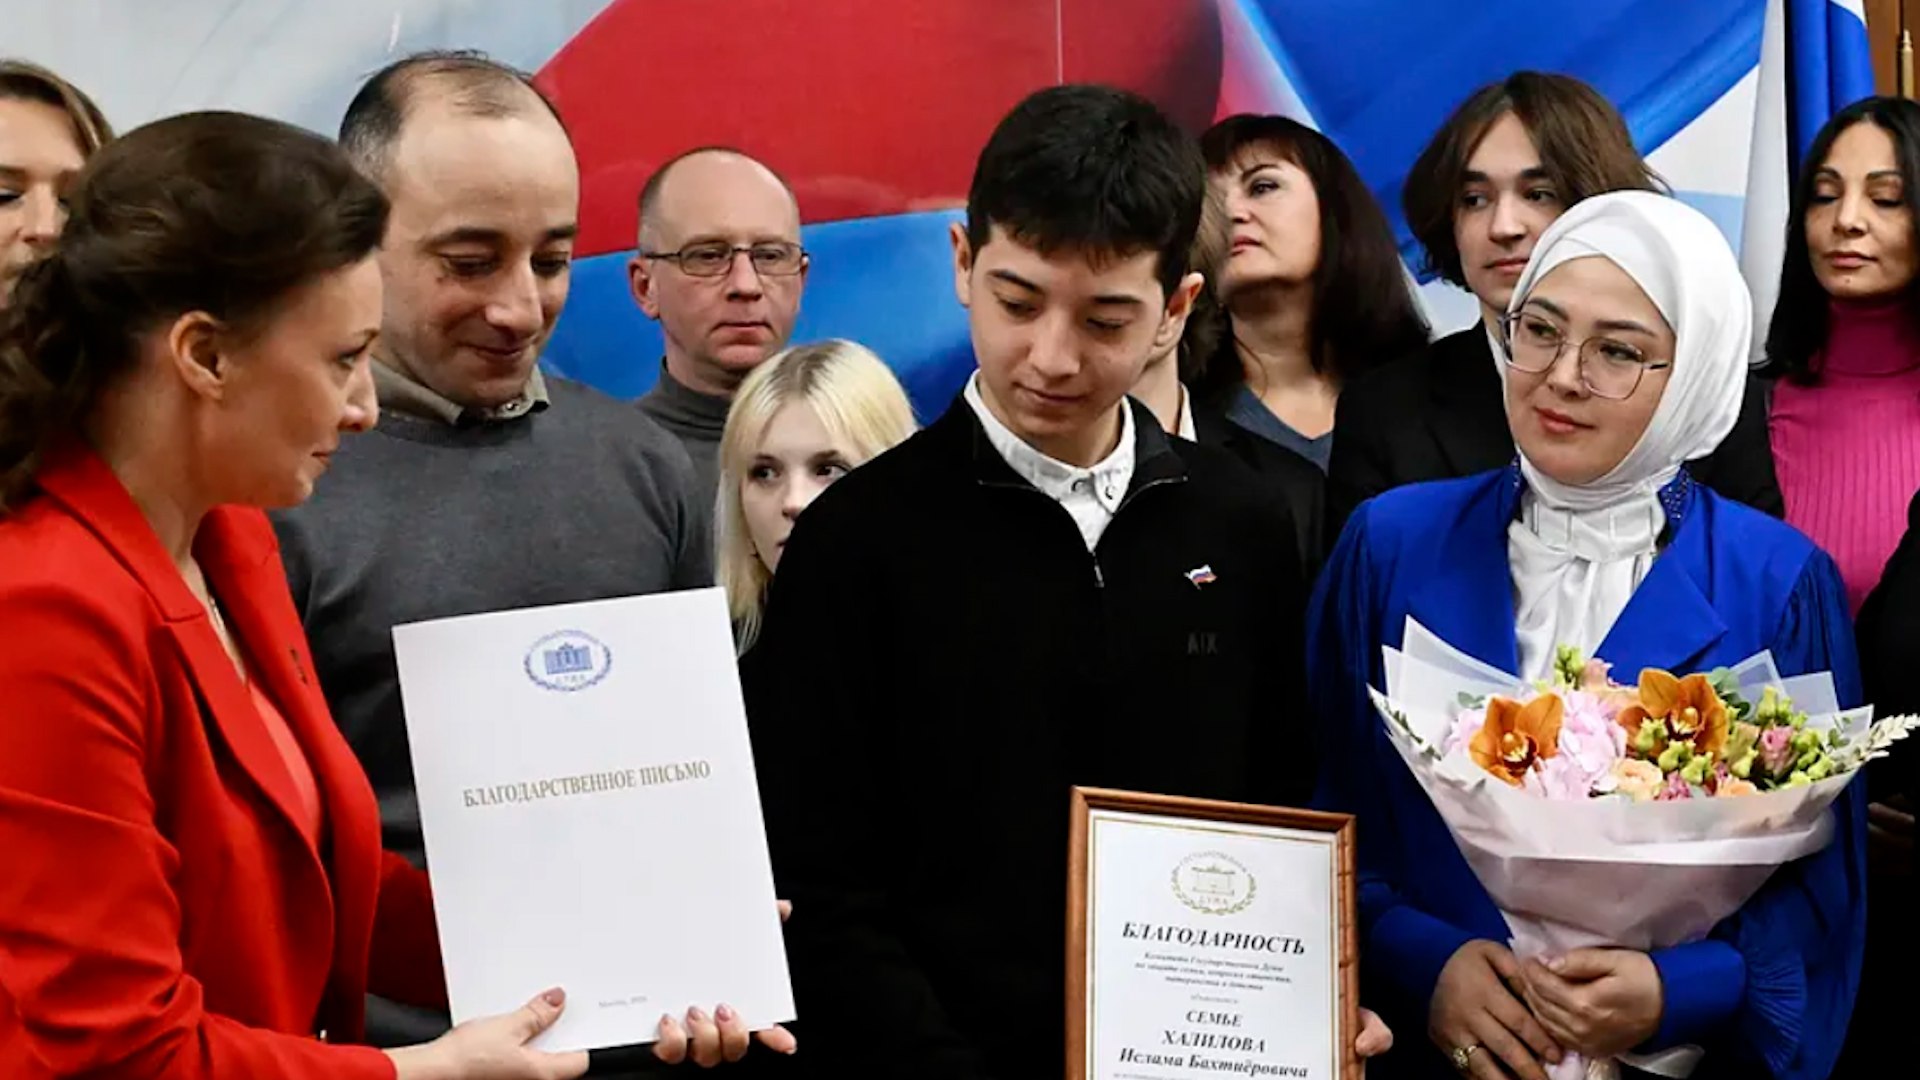 Rusia premia a unos adolescente que salvaron decenas de vidas en el atentado: "Se metan en un callejn sin salida"